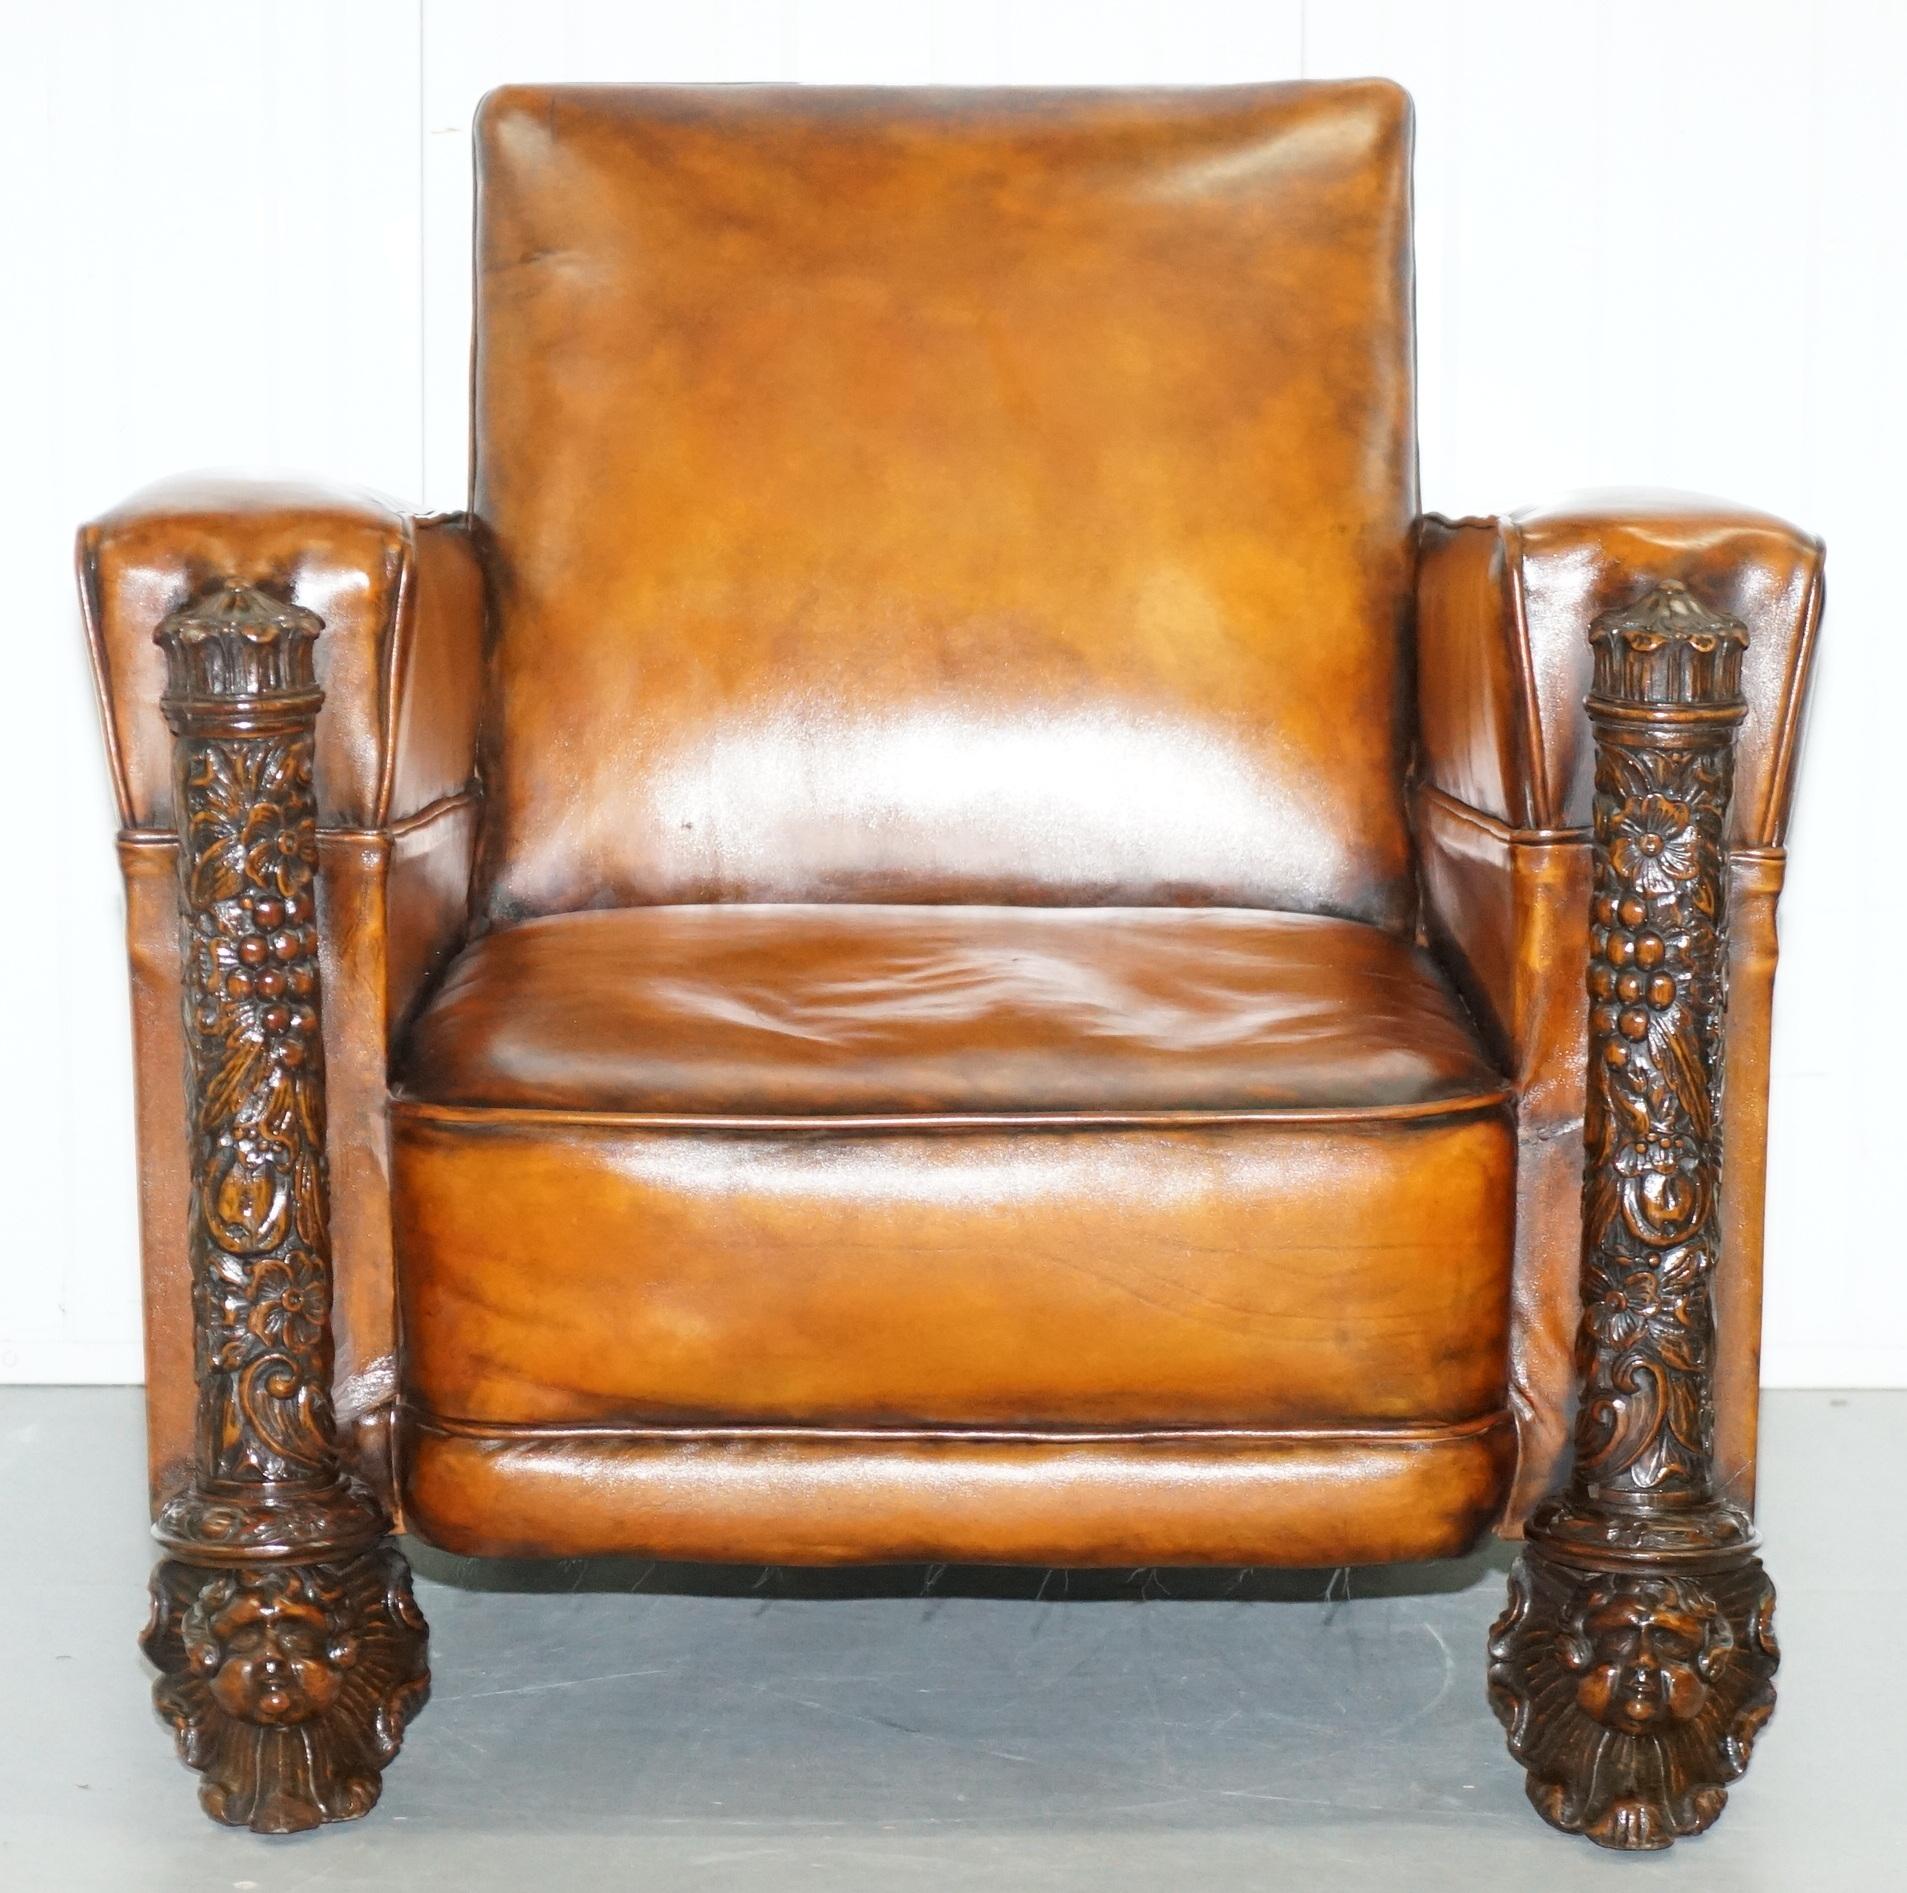 Pair of Victorian Brown Leather Club Armchairs 17th Century Cherub Putti Angels (Viktorianisch)